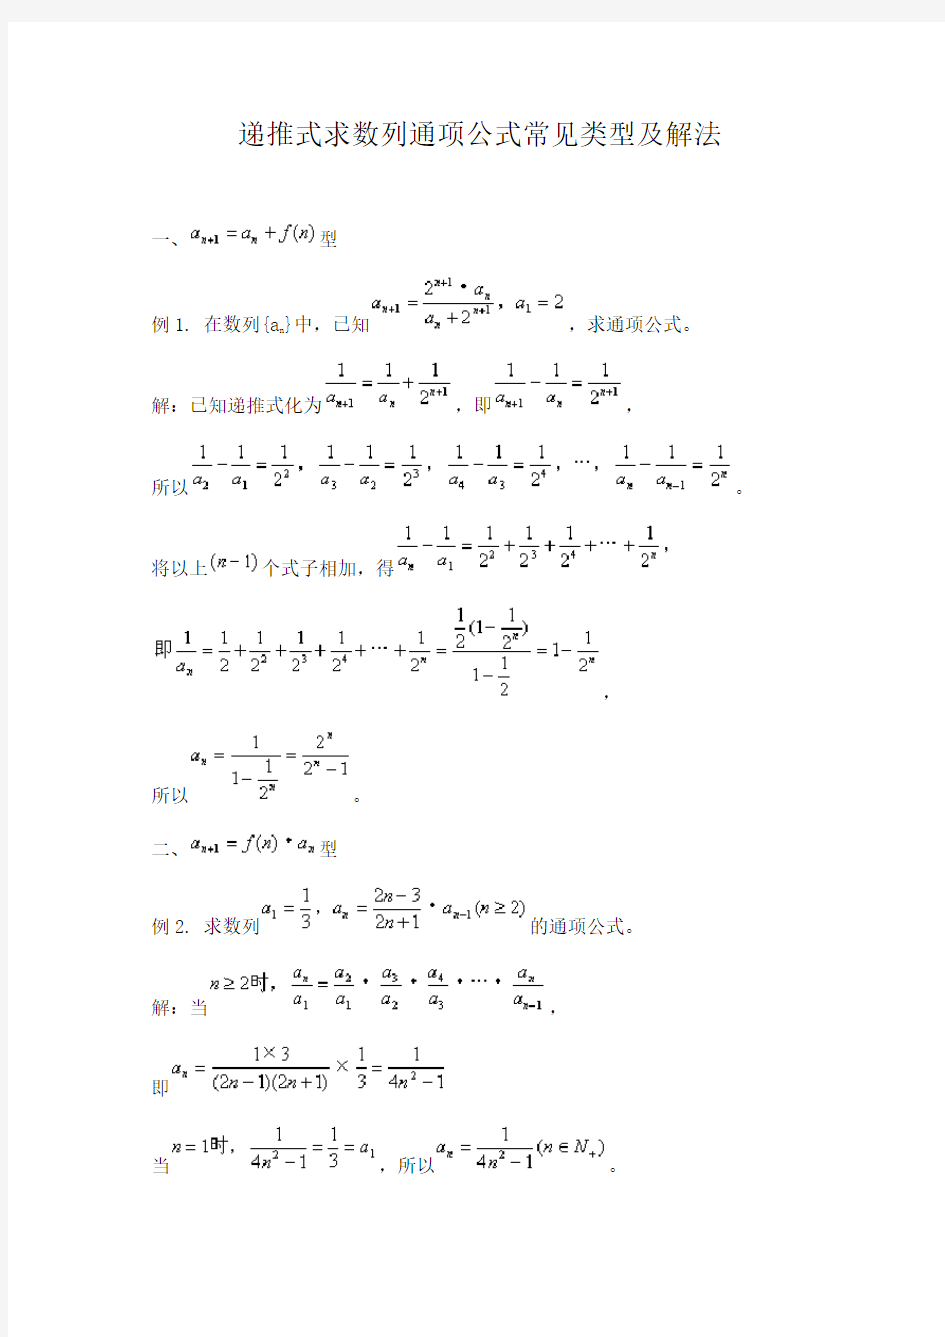 数列通项公式求解及用放缩法和数学归纳法证明数列不等式